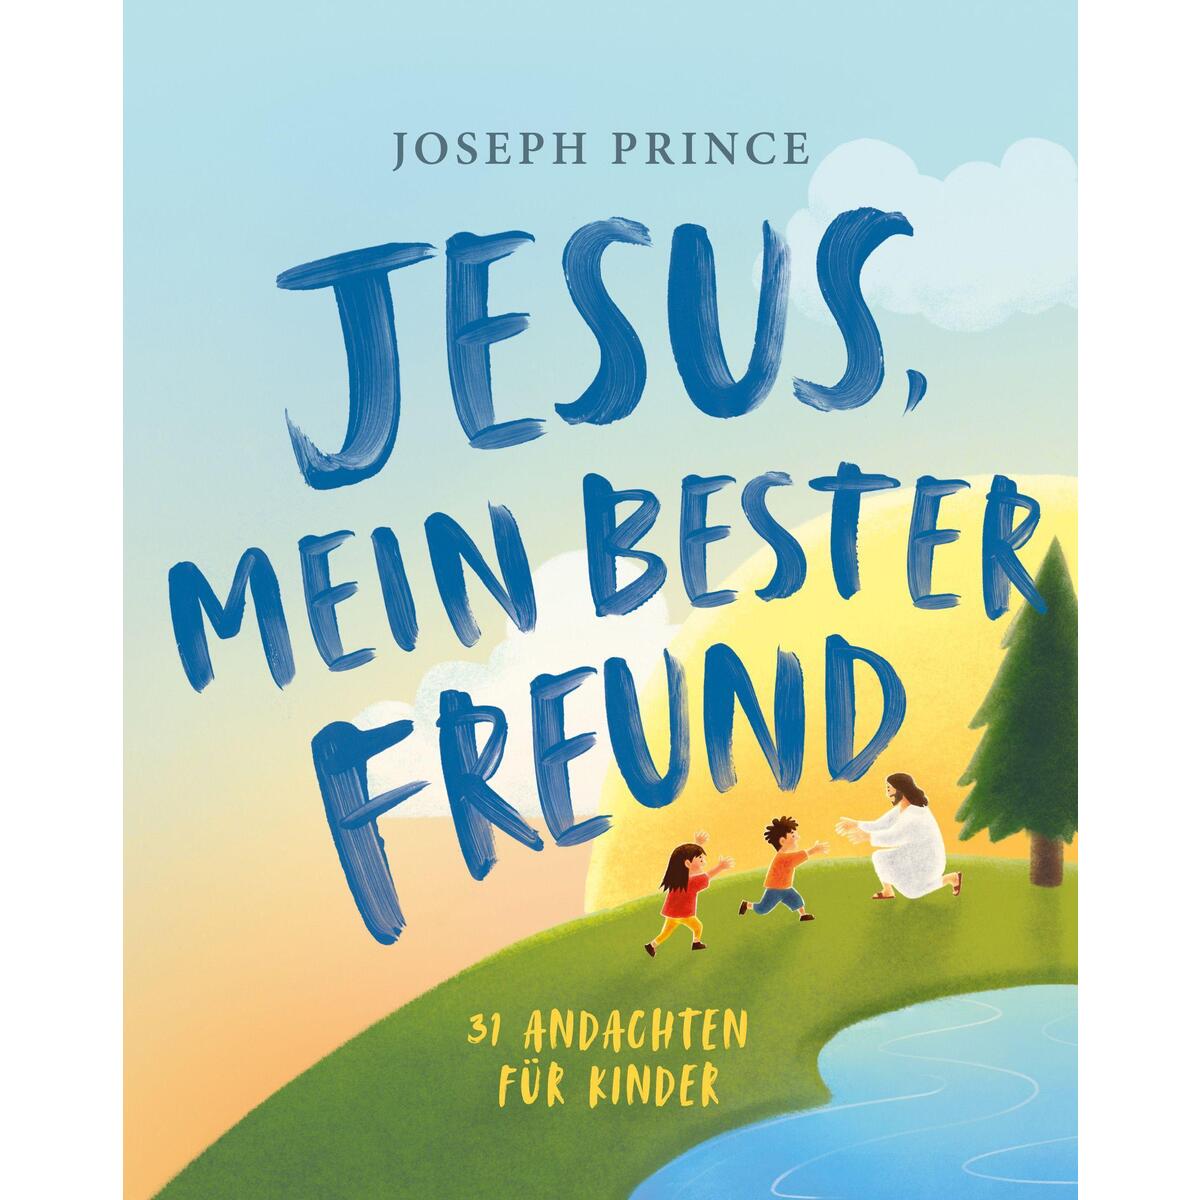 Jesus, mein bester Freund von Grace today Verlag